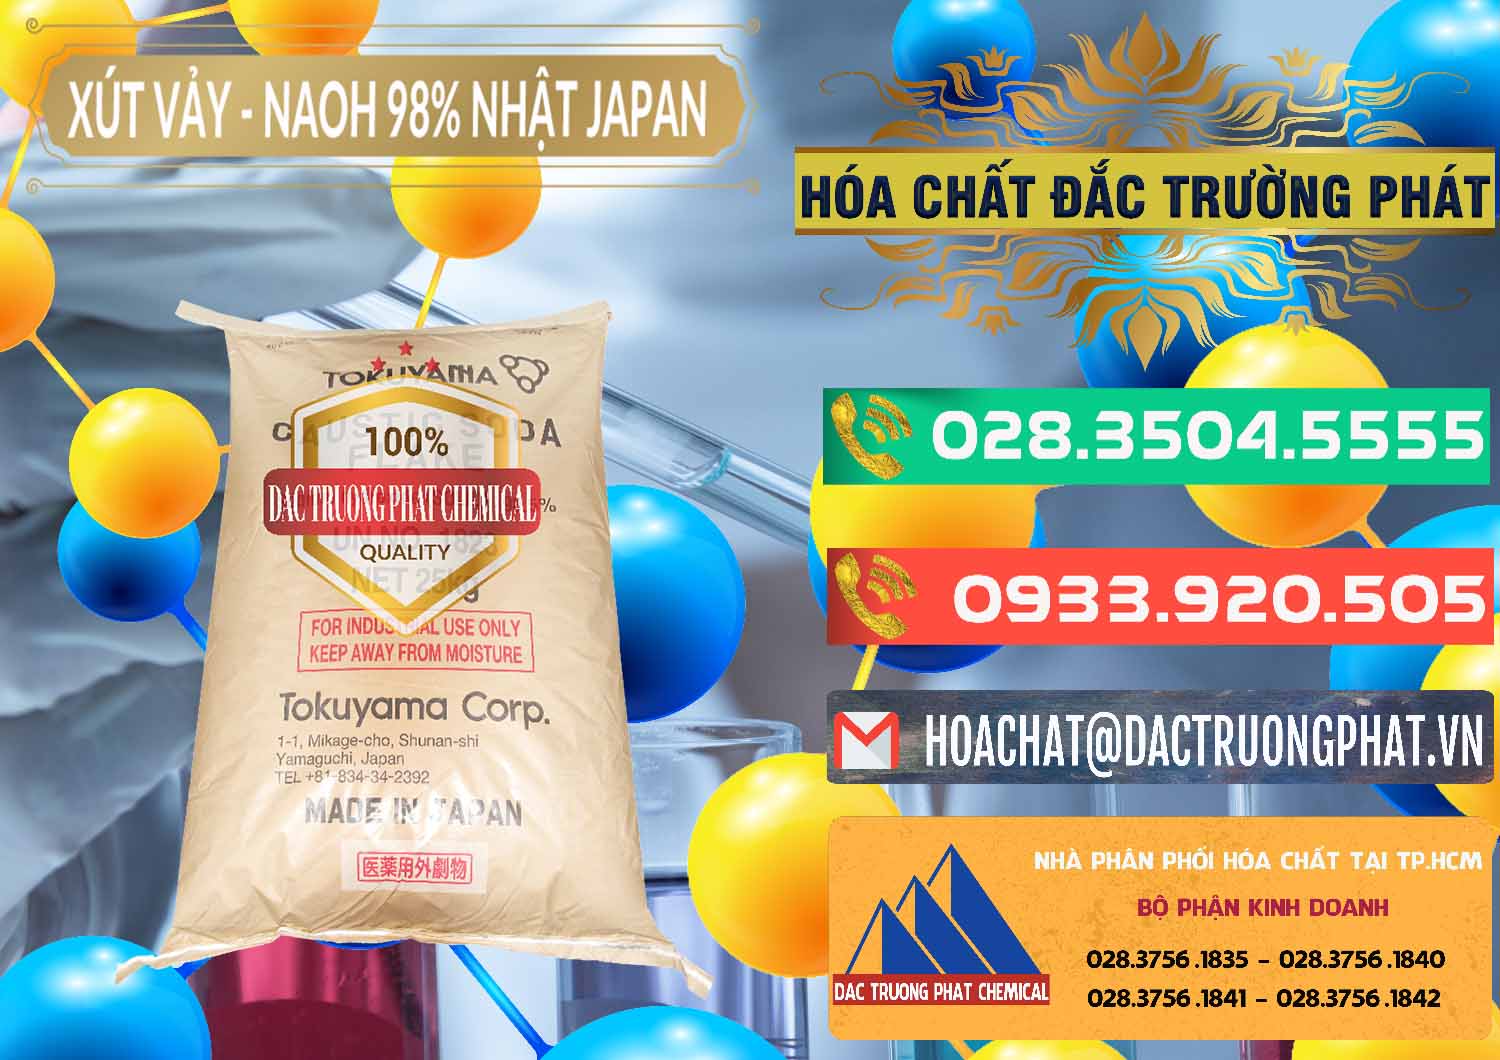 Chuyên cung cấp - bán Xút Vảy - NaOH Vảy 98% Tokuyama Nhật Bản Japan - 0173 - Đơn vị chuyên bán & cung cấp hóa chất tại TP.HCM - congtyhoachat.com.vn